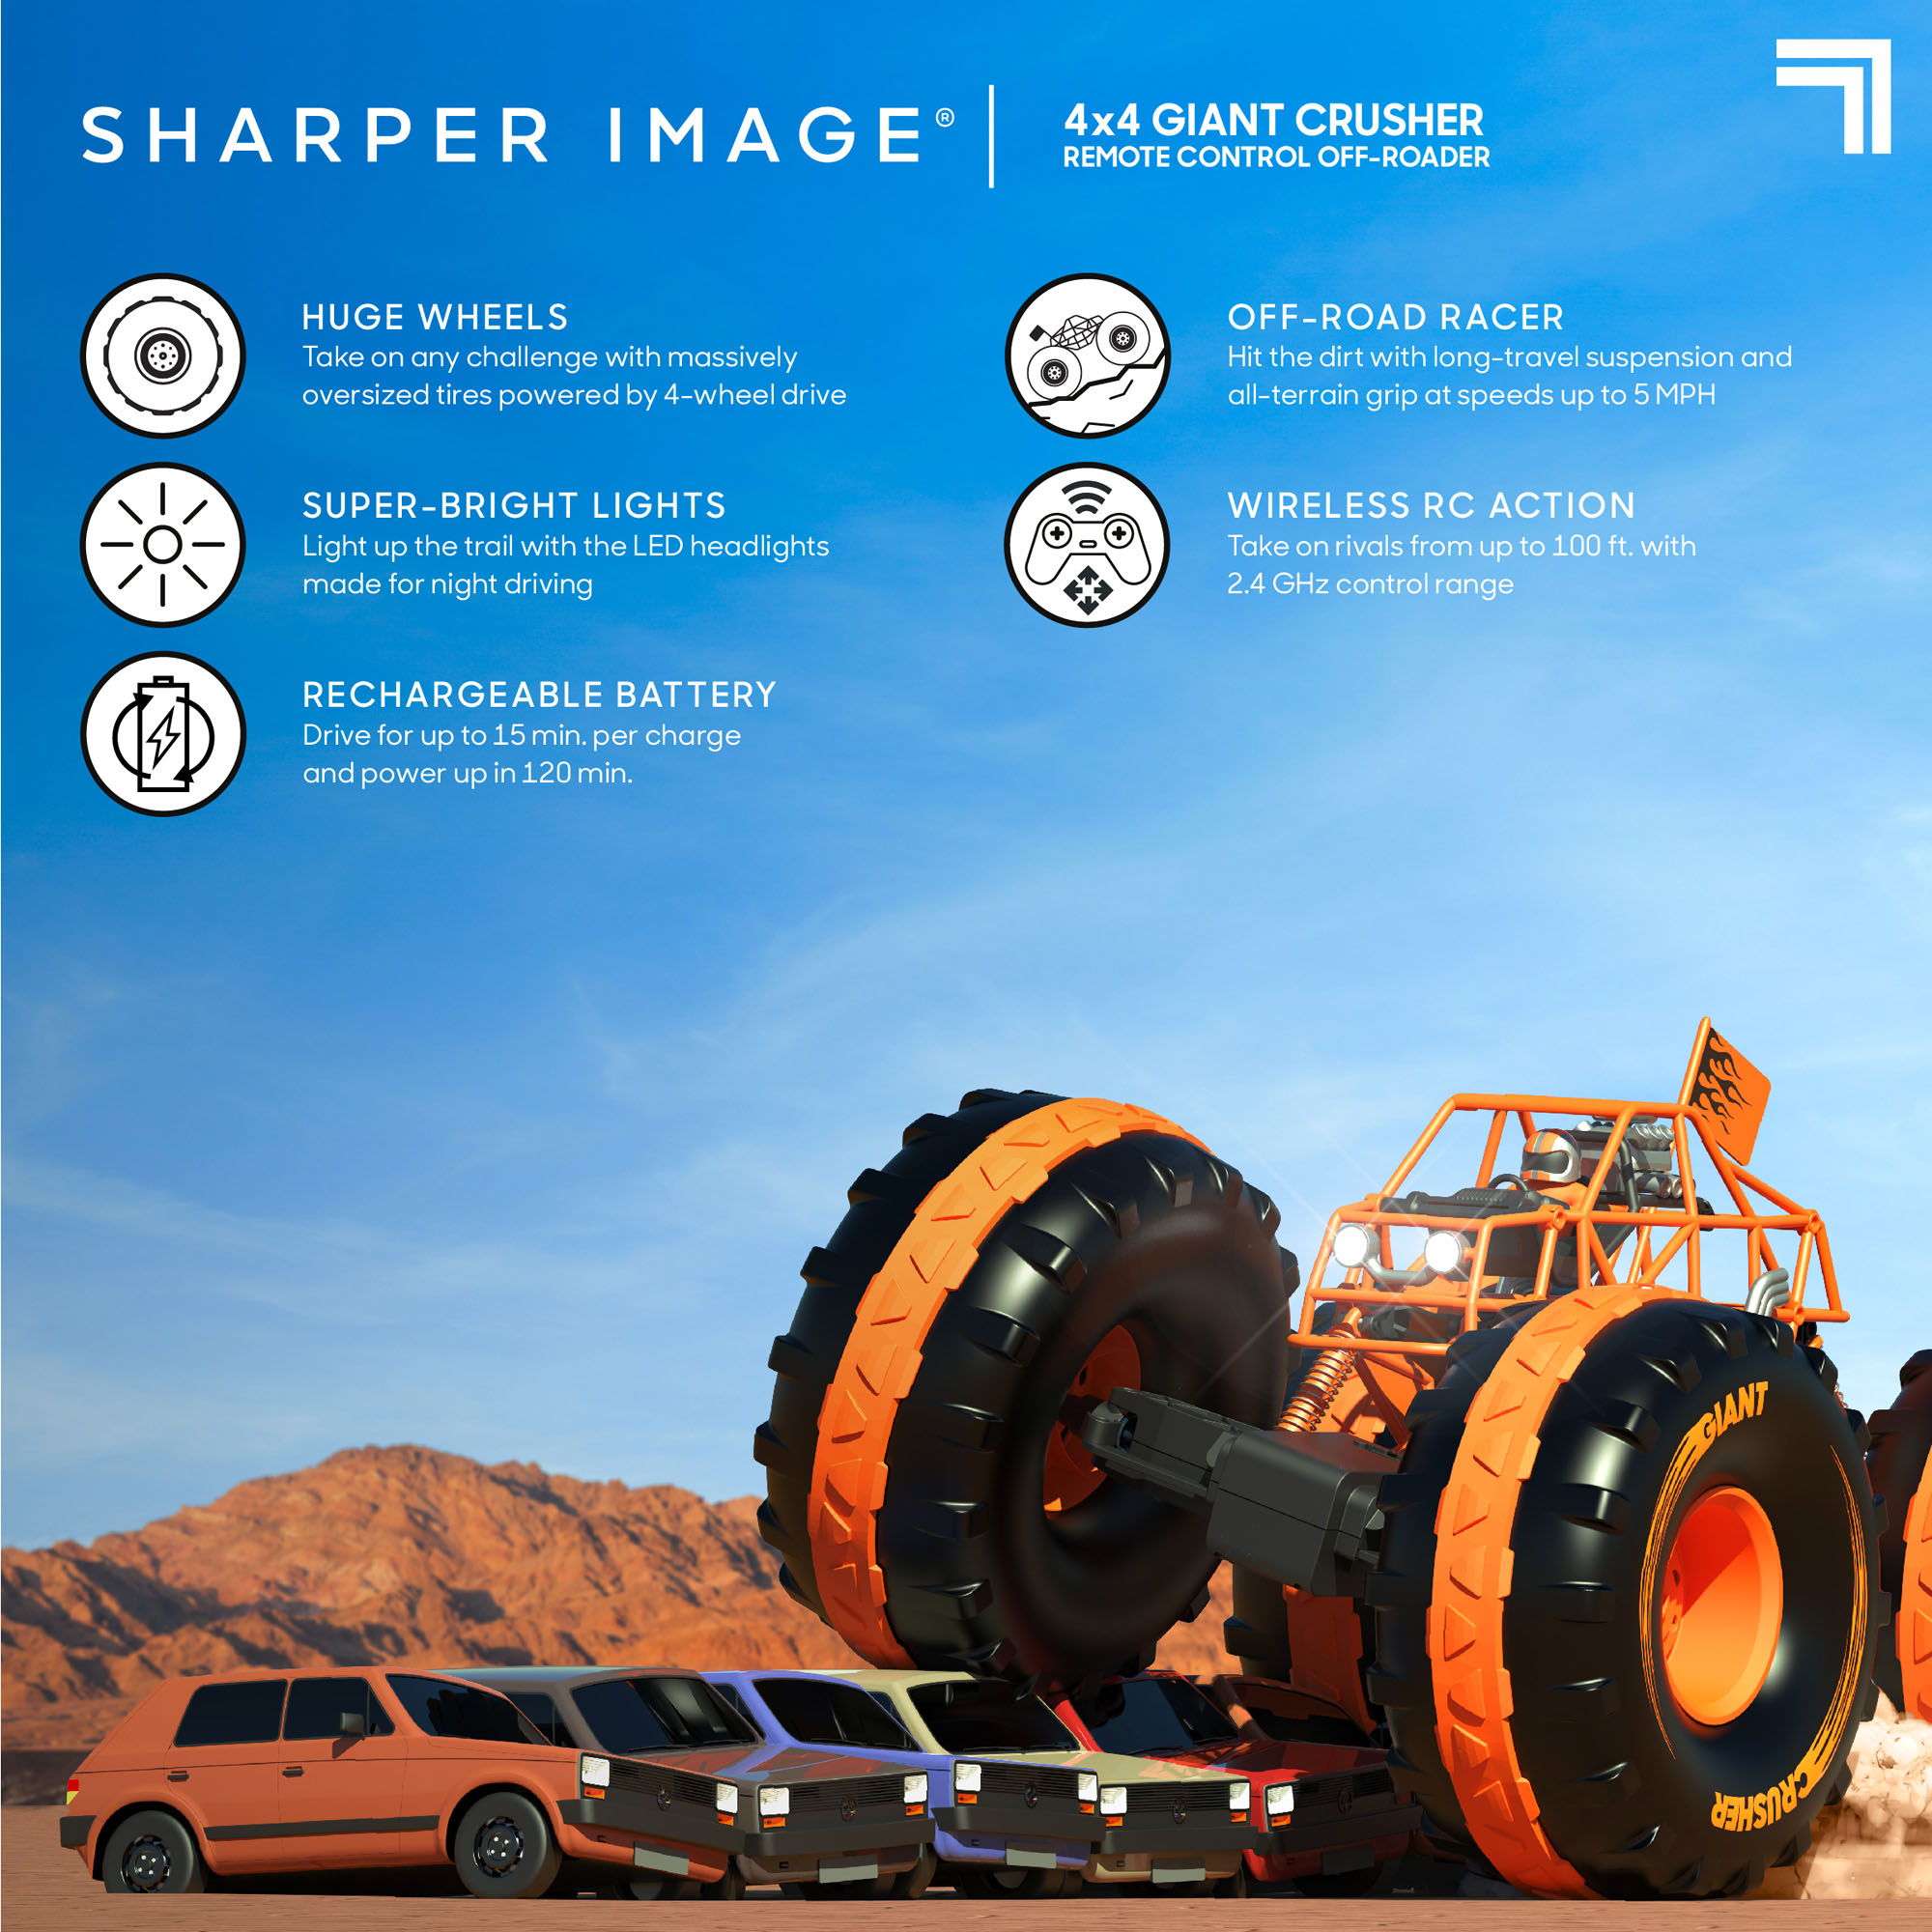 Fuoristrada 4x4 Giant Crusher Telecomandato Sharper Image in Vendita Online